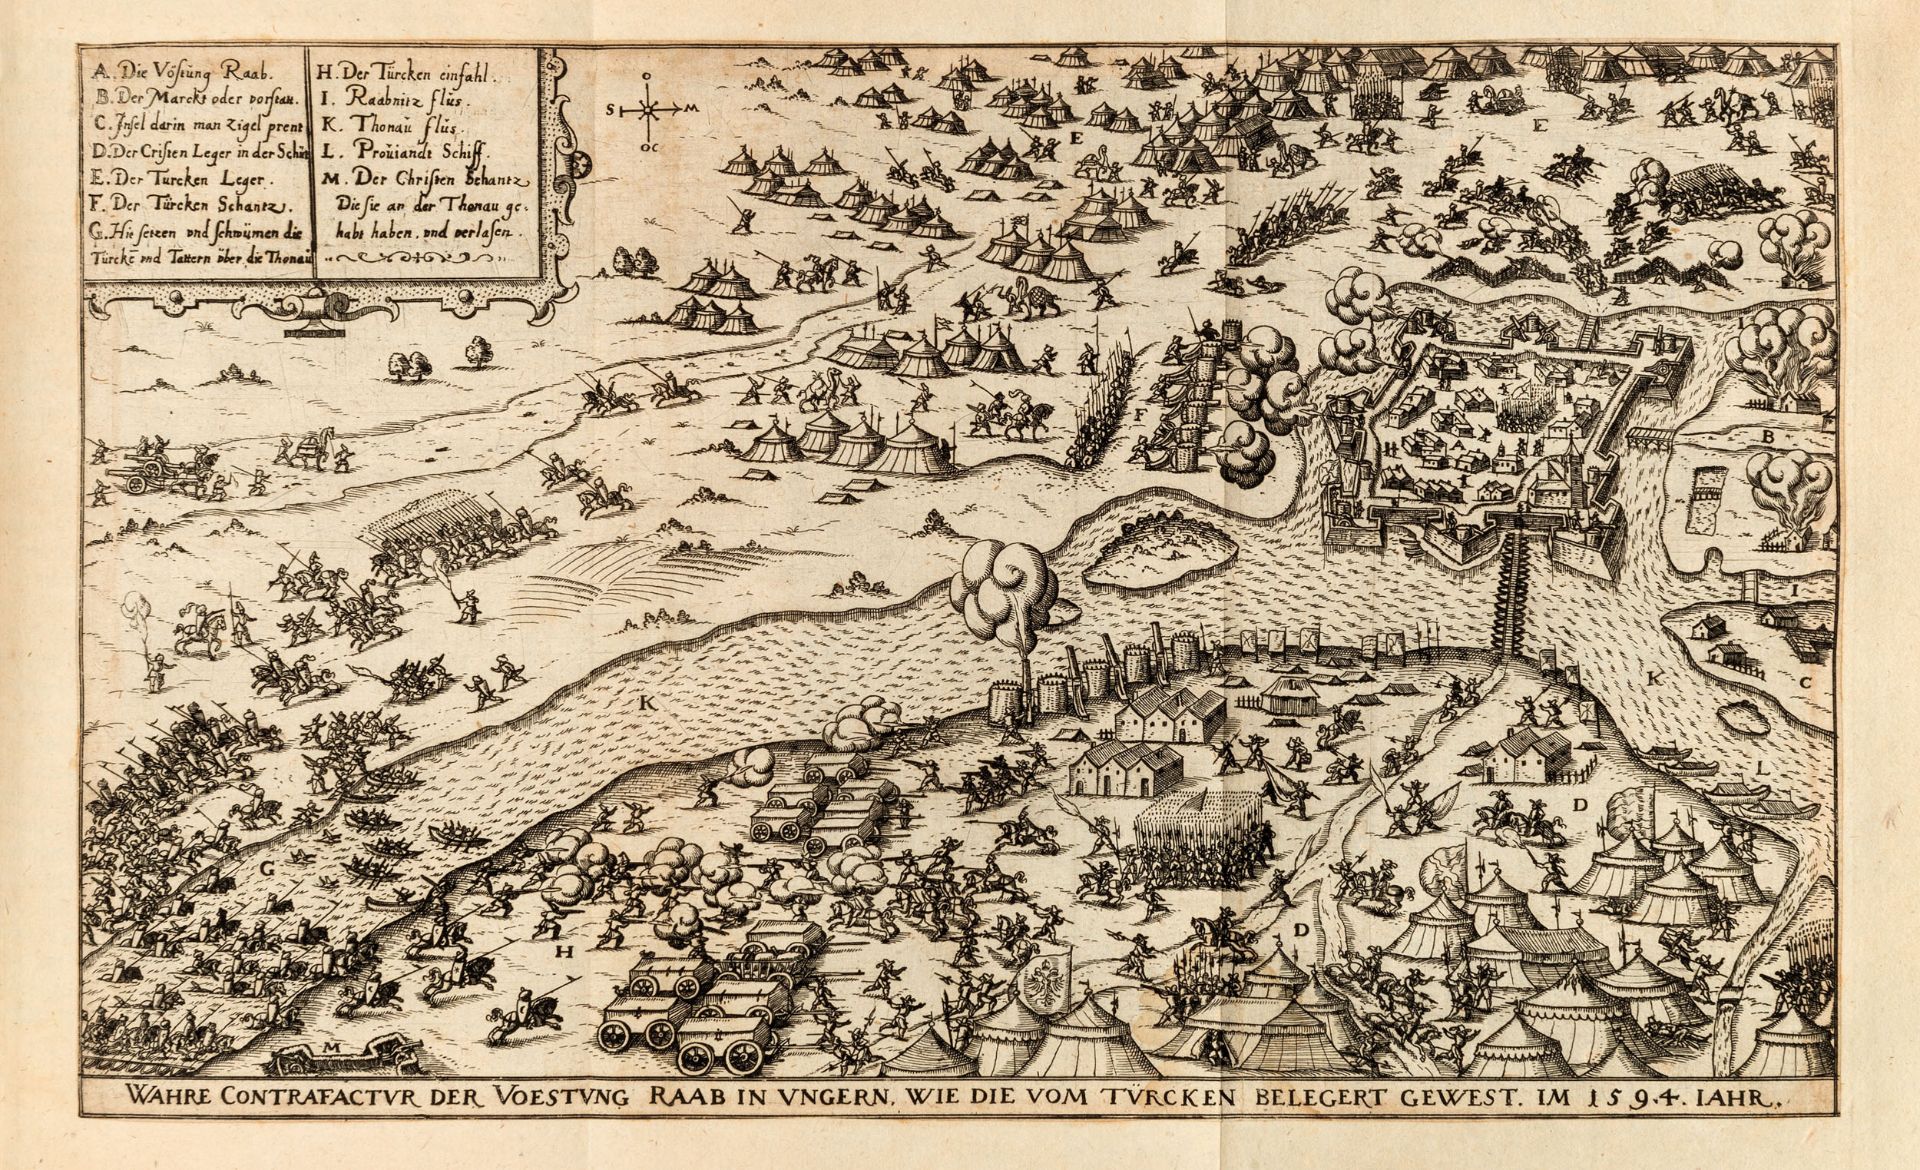 [MILITARIA] OERTEL, Hieronymus (1543-1614). Chronologia Oder Historische beschreibung. Nuremberg: - Image 2 of 3